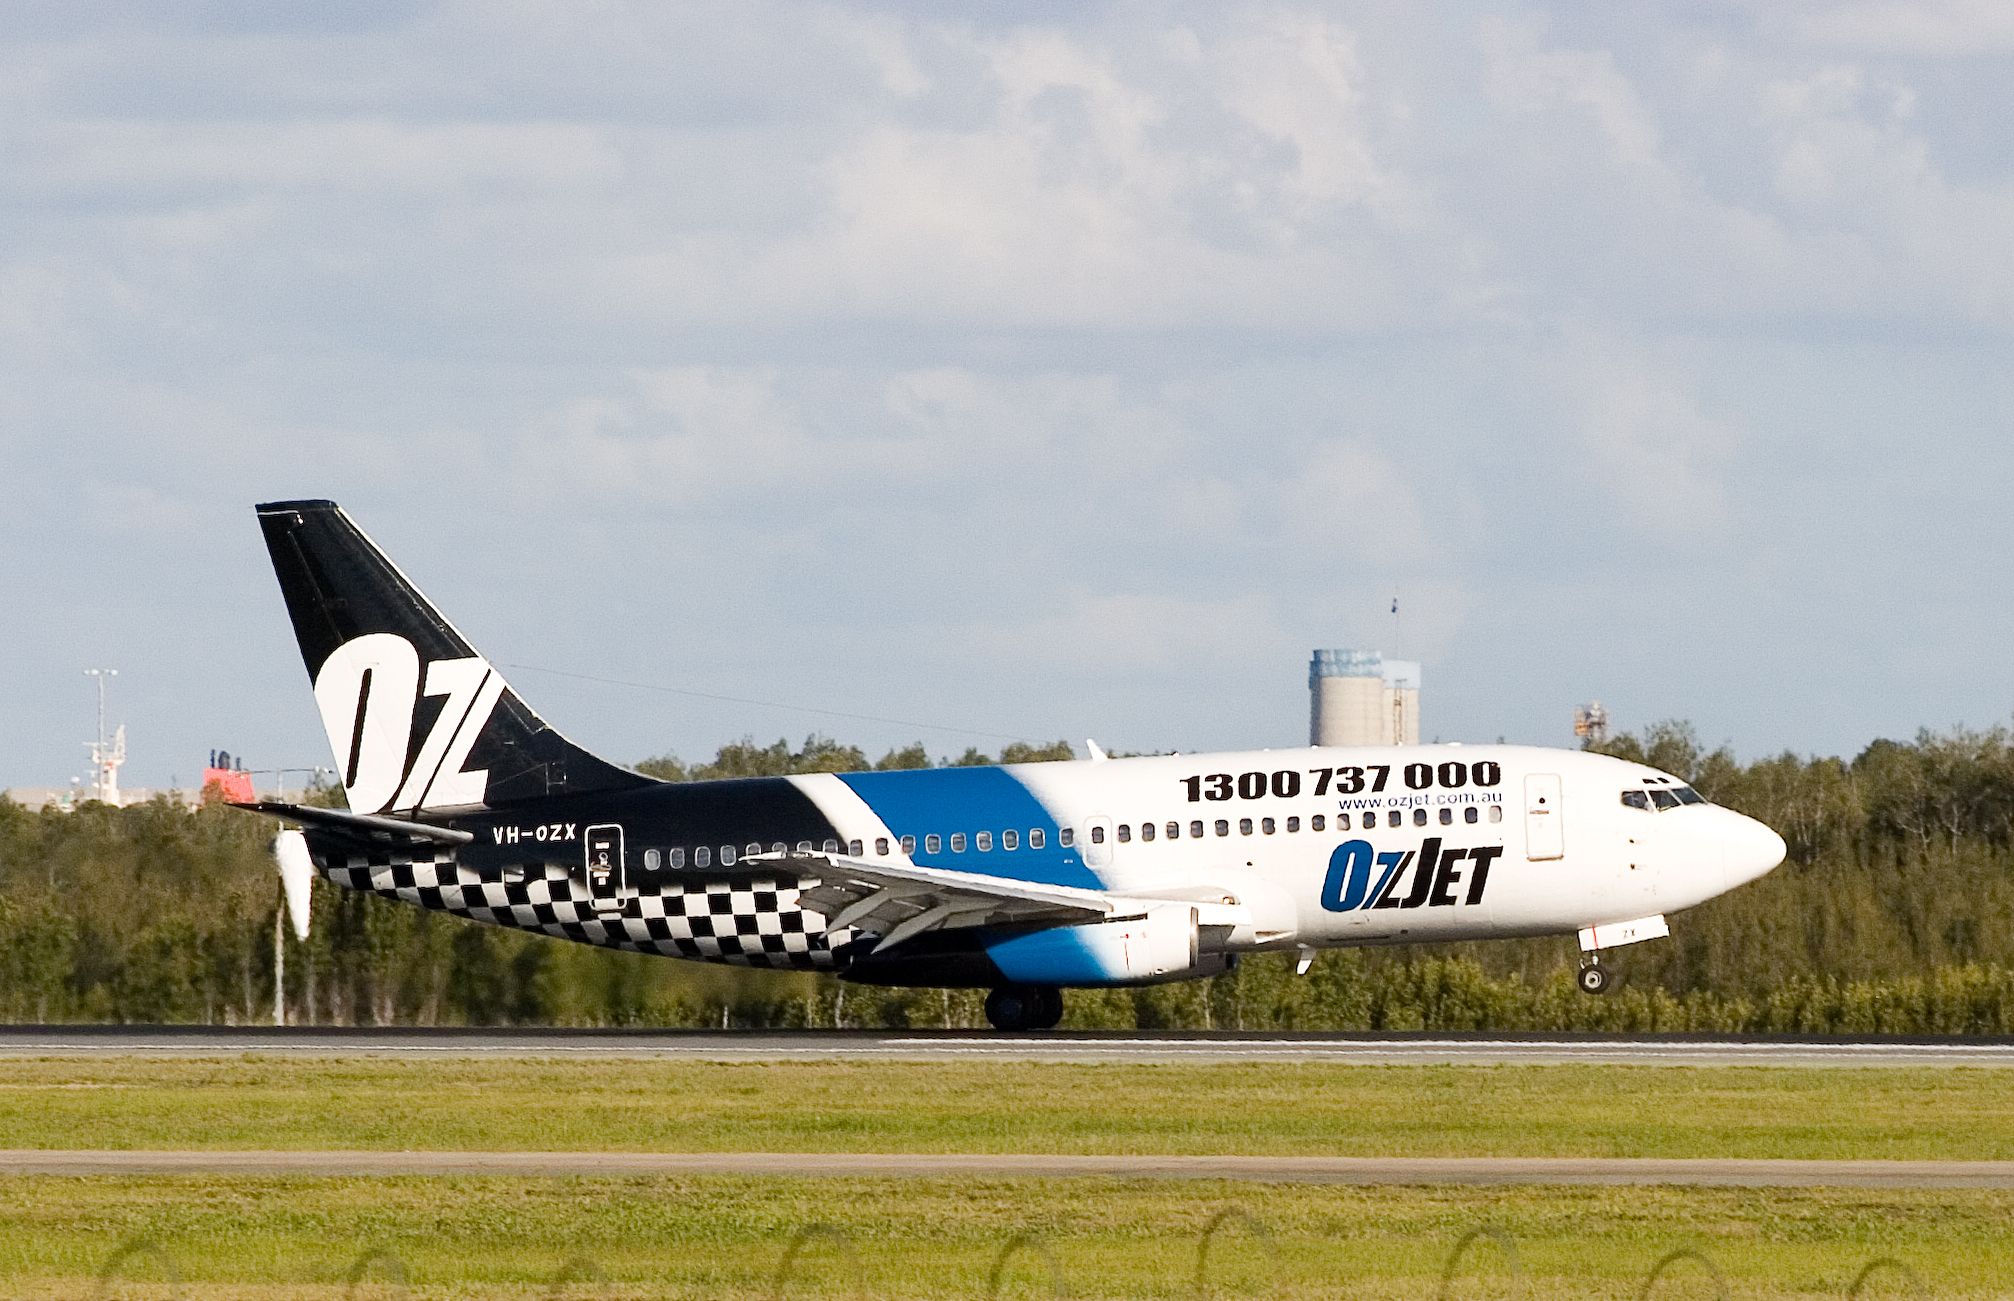 OzJet Boeing 737-200 taking off.